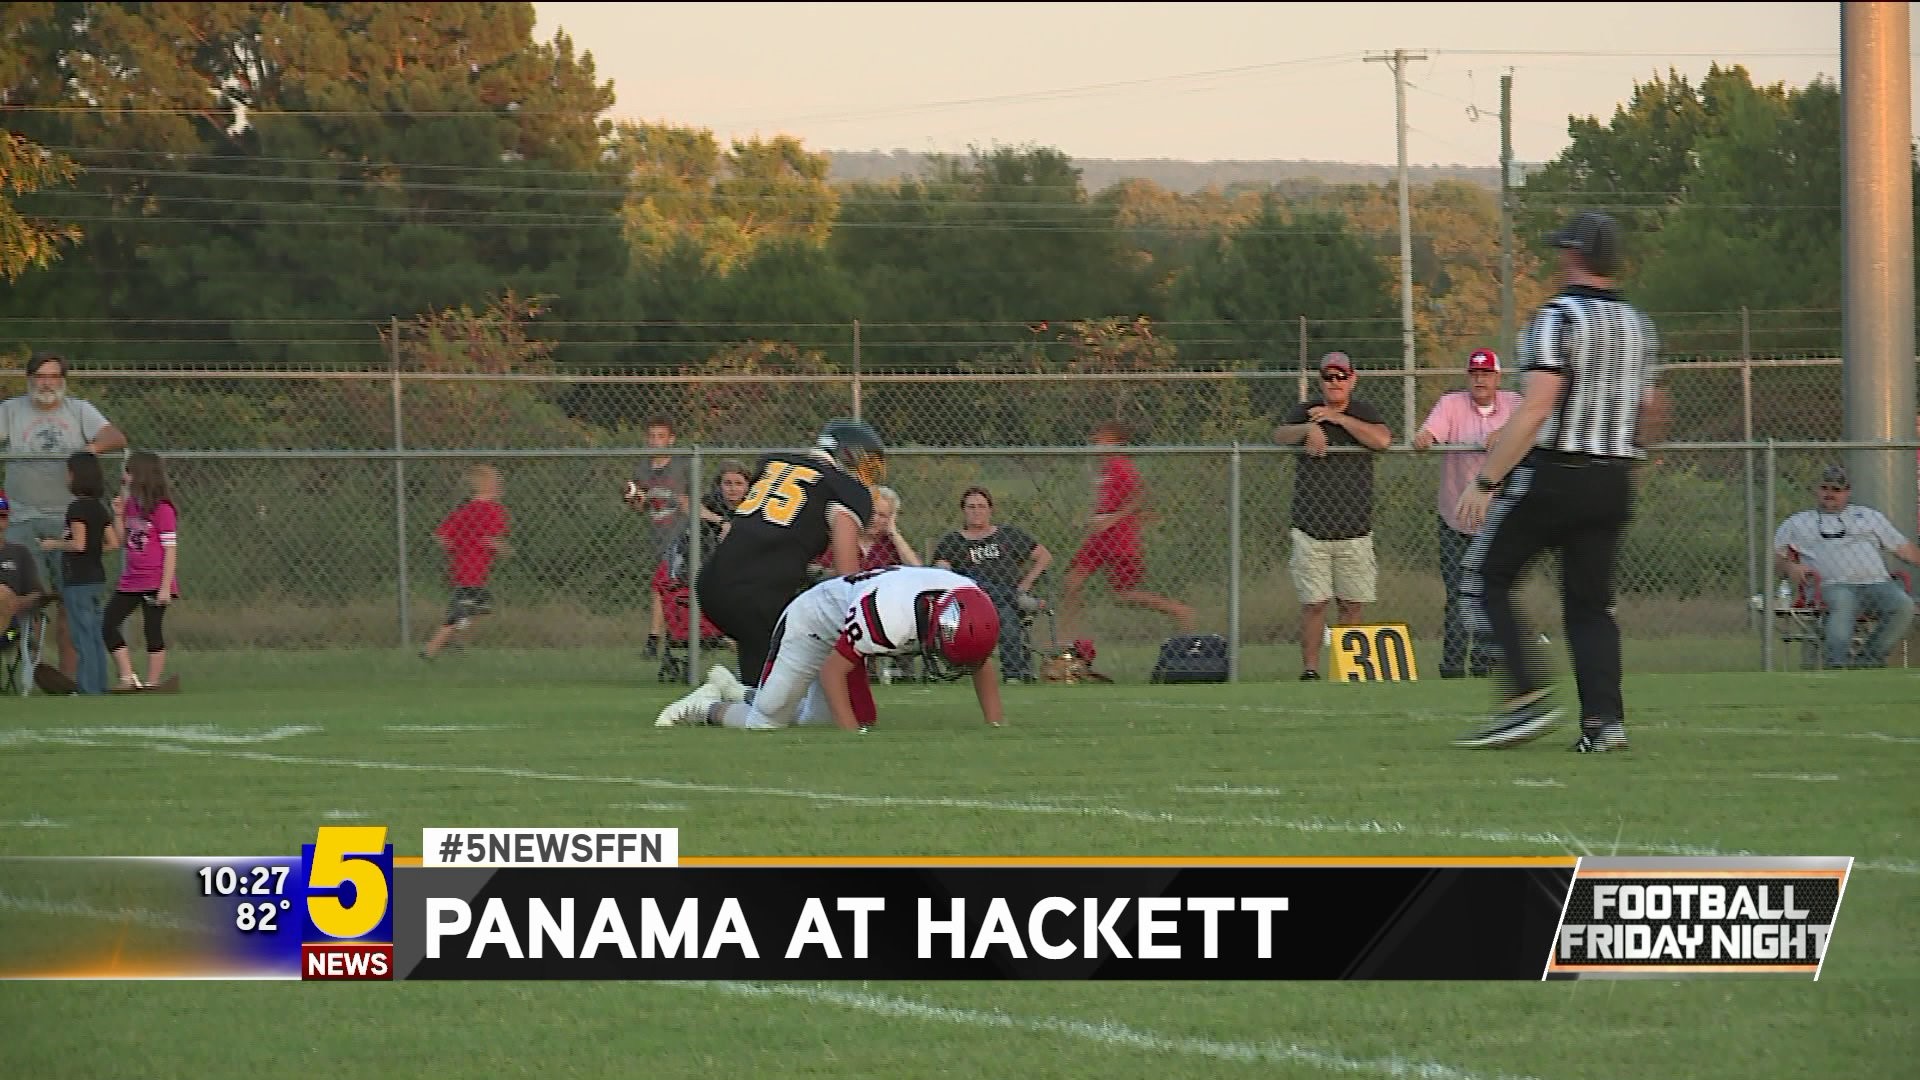 PANAMA VS HACKETT